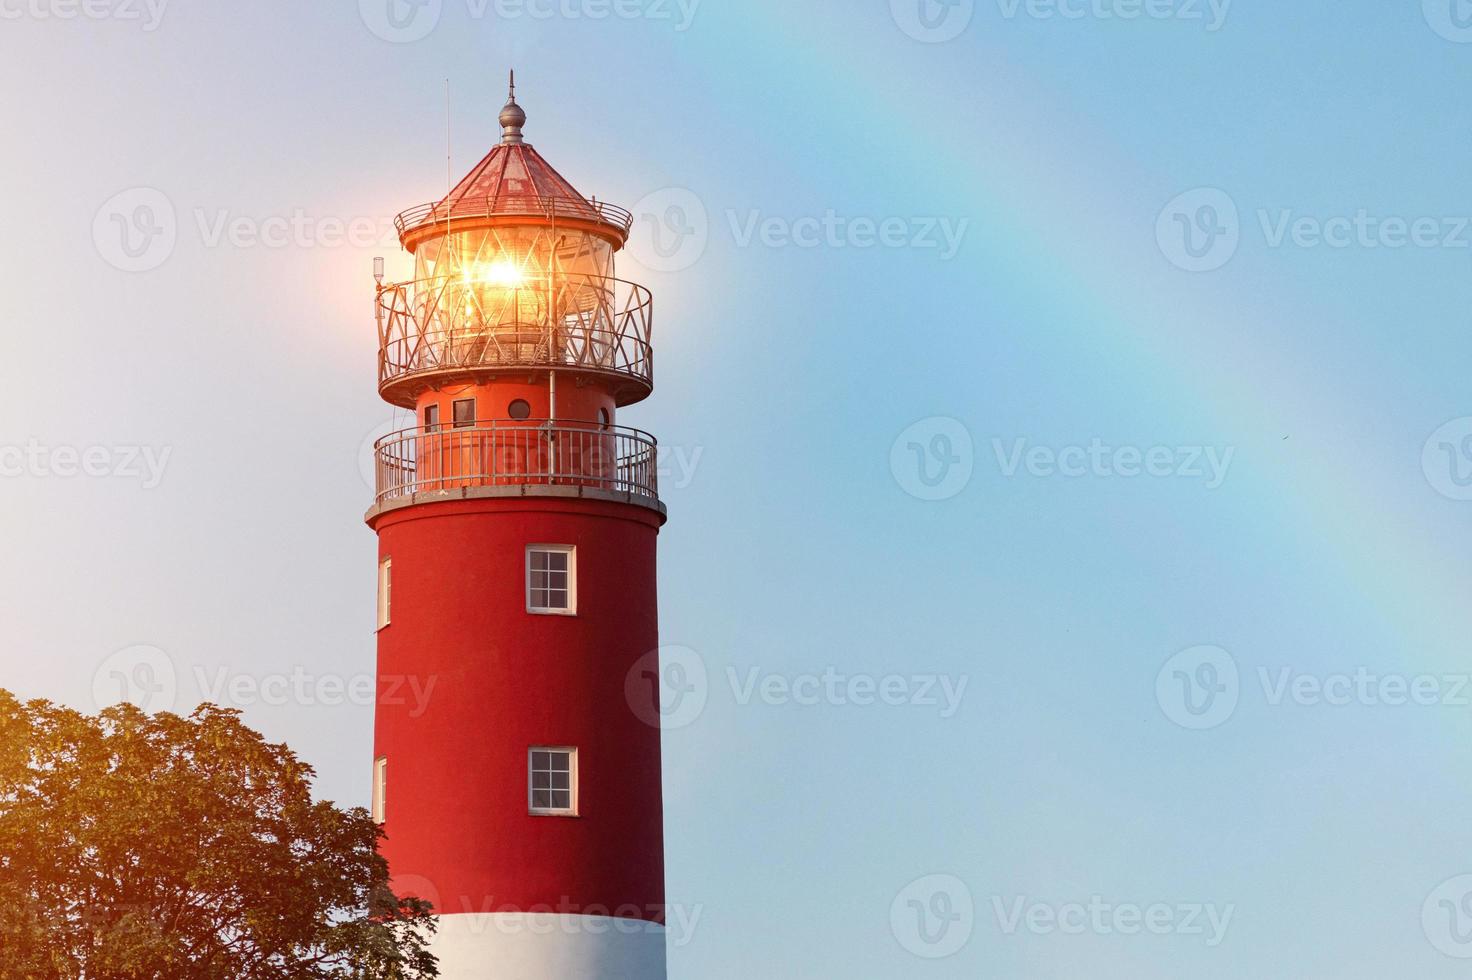 leuchtturm im hafen von baltijsk, schöne regenbogen- und leuchtfeuerlichter, sauberer blauer himmel foto